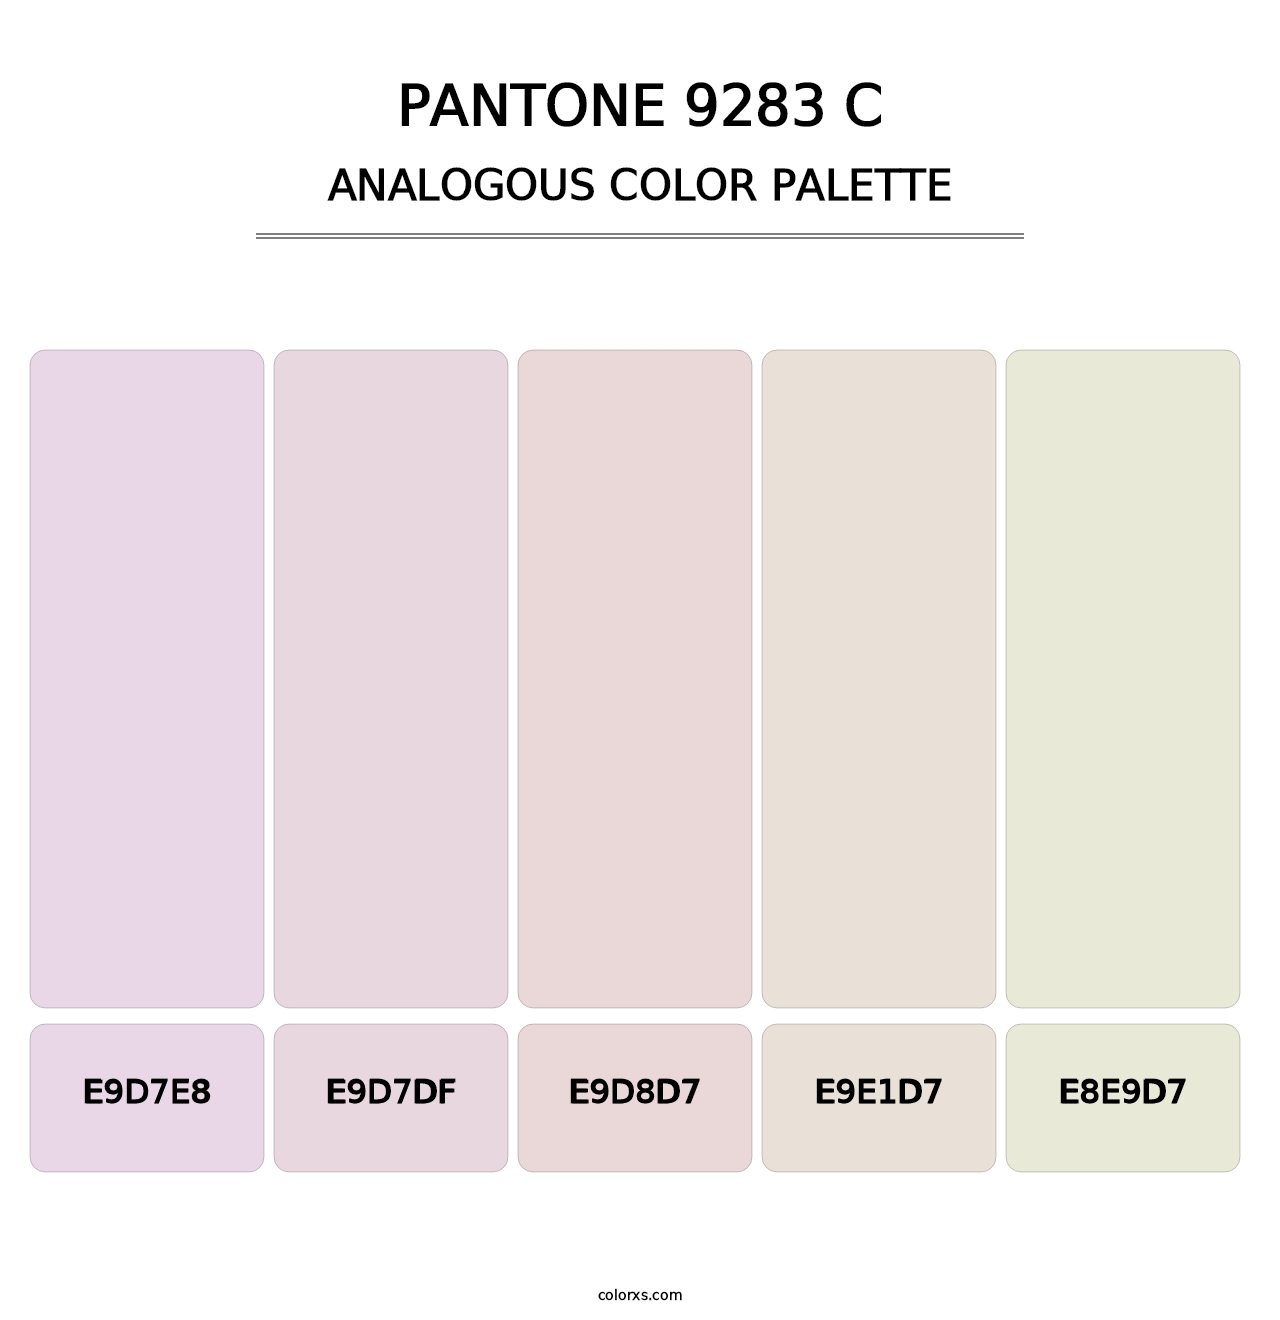 PANTONE 9283 C - Analogous Color Palette